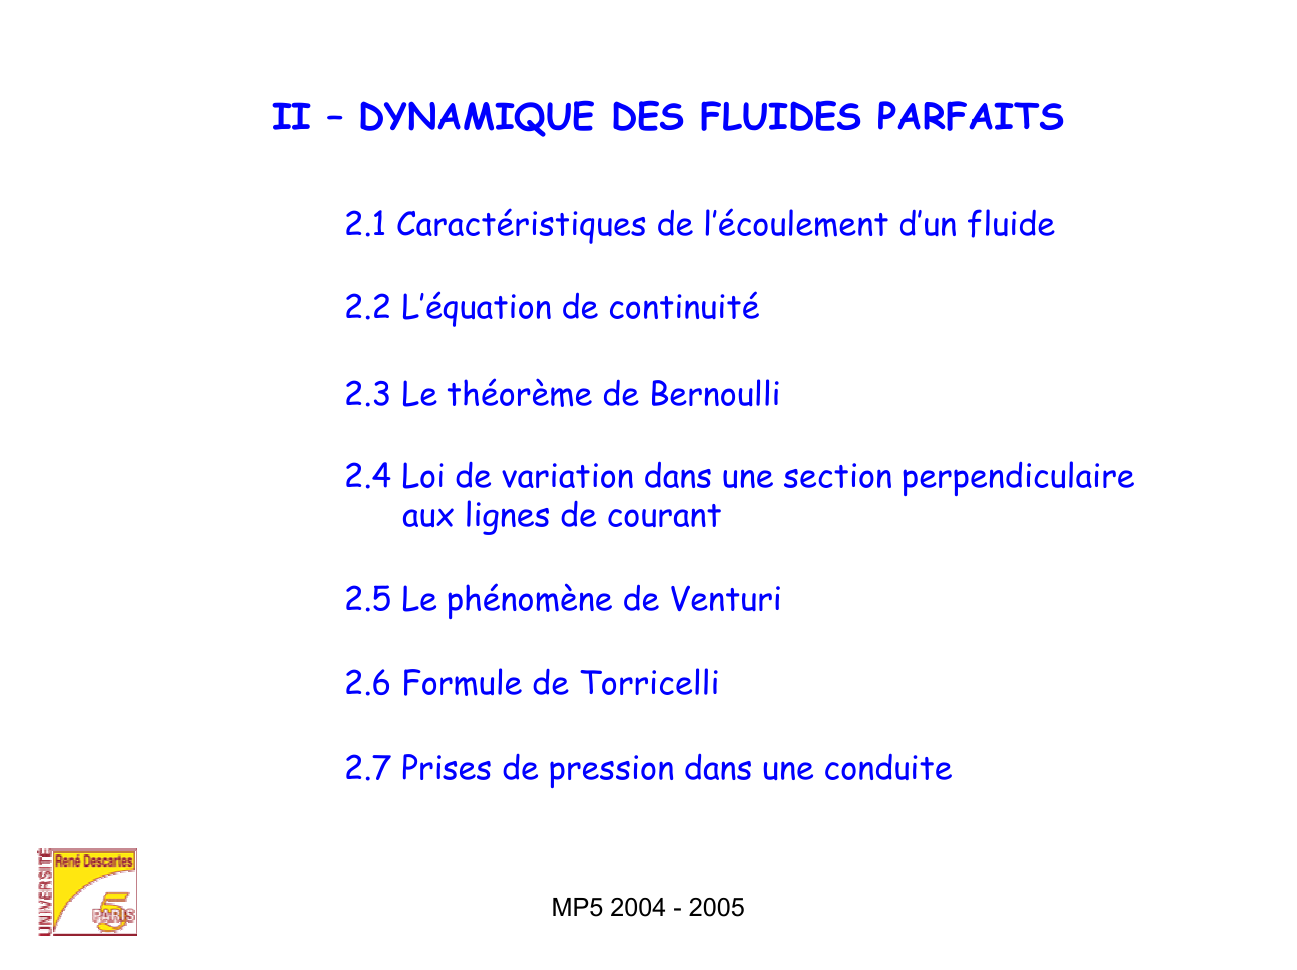 Prévisualisation du document DYNAMIQUE DES FLUIDES PARFAITS.